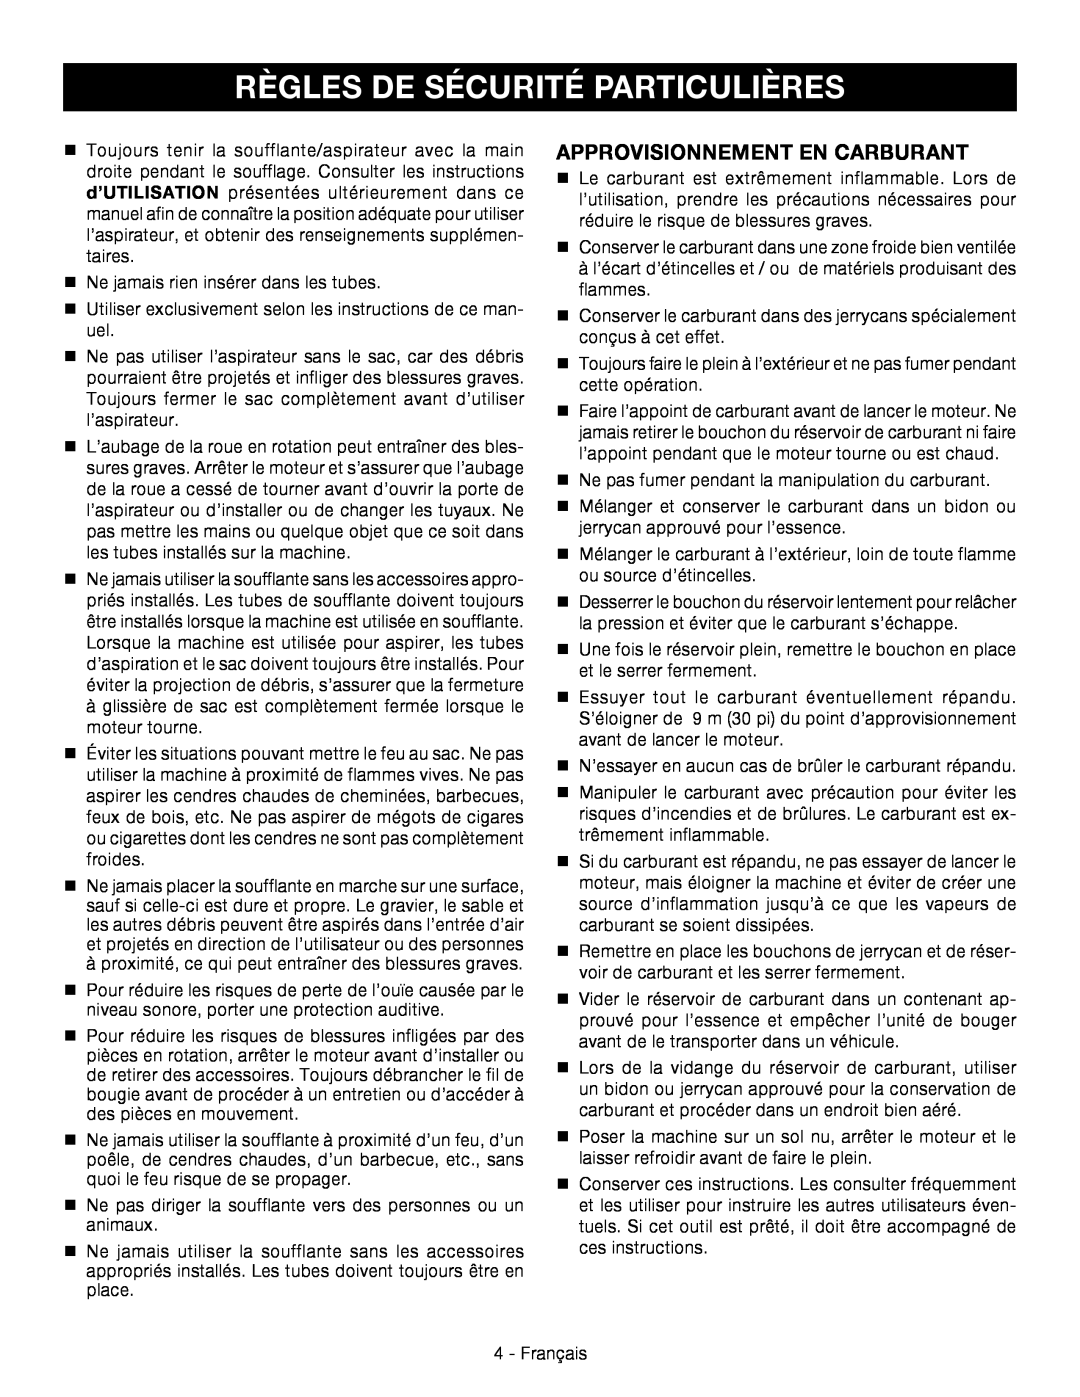 Ryobi RY09053 manuel dutilisation Règles De Sécurité Particulières, Approvisionnement En Carburant 